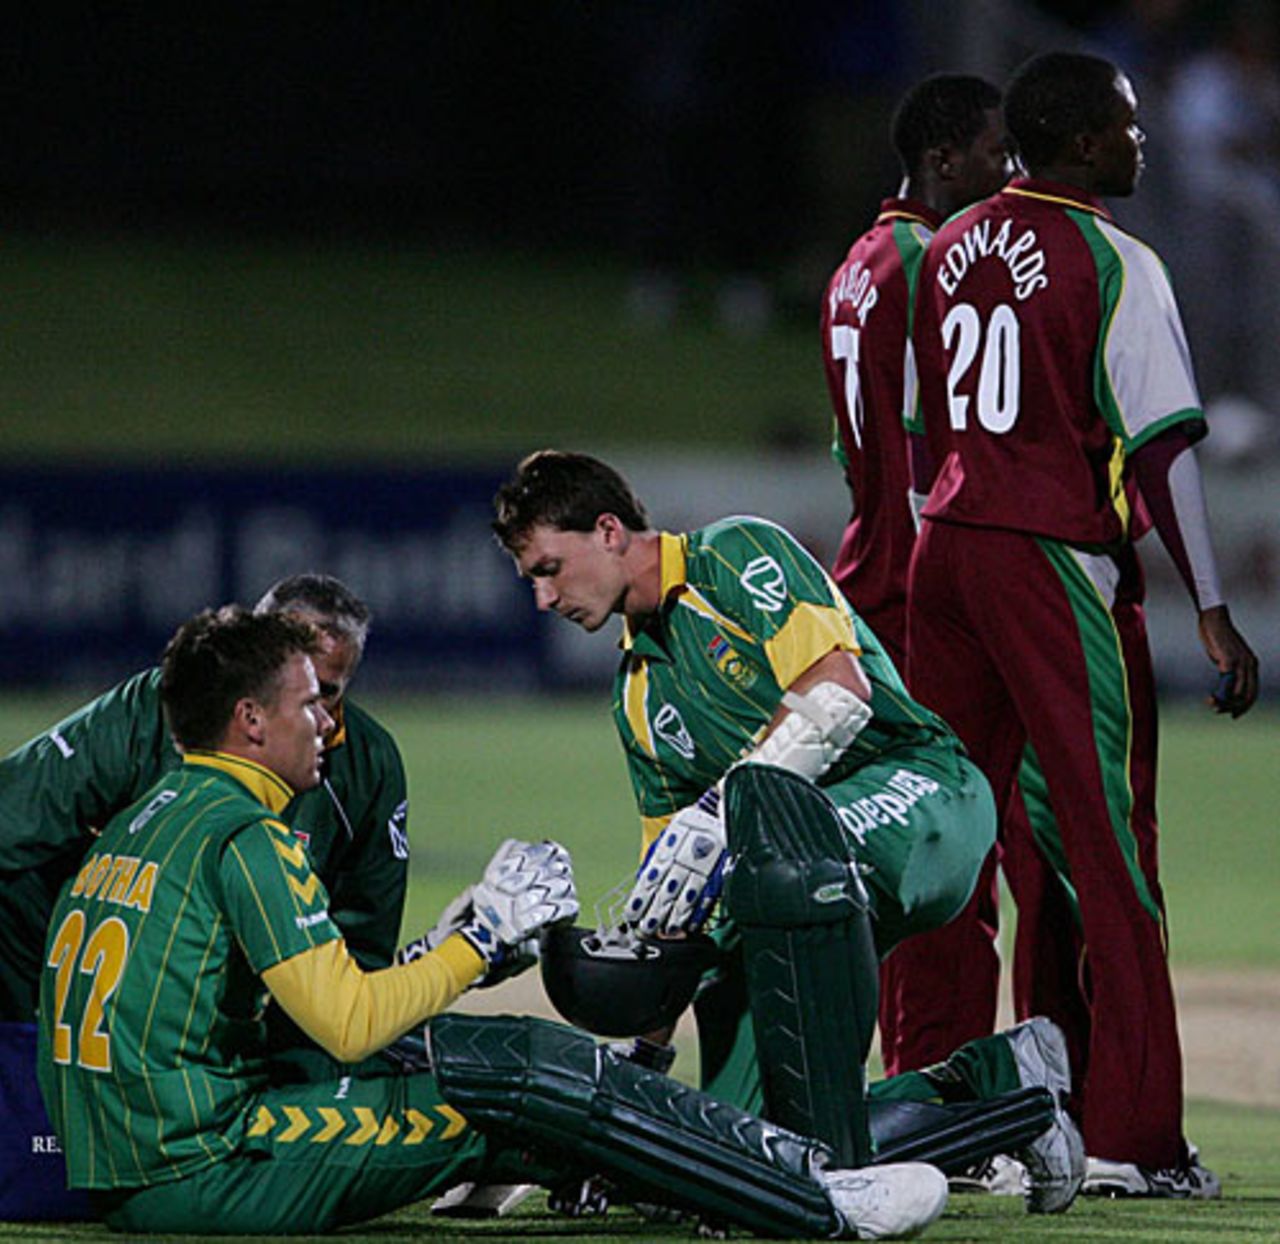 Johan Botha collects himself after he was floored by Fidel Edwards, South Africa v West Indies, 1st Twenty20, Port Elizabeth, December 16, 2007